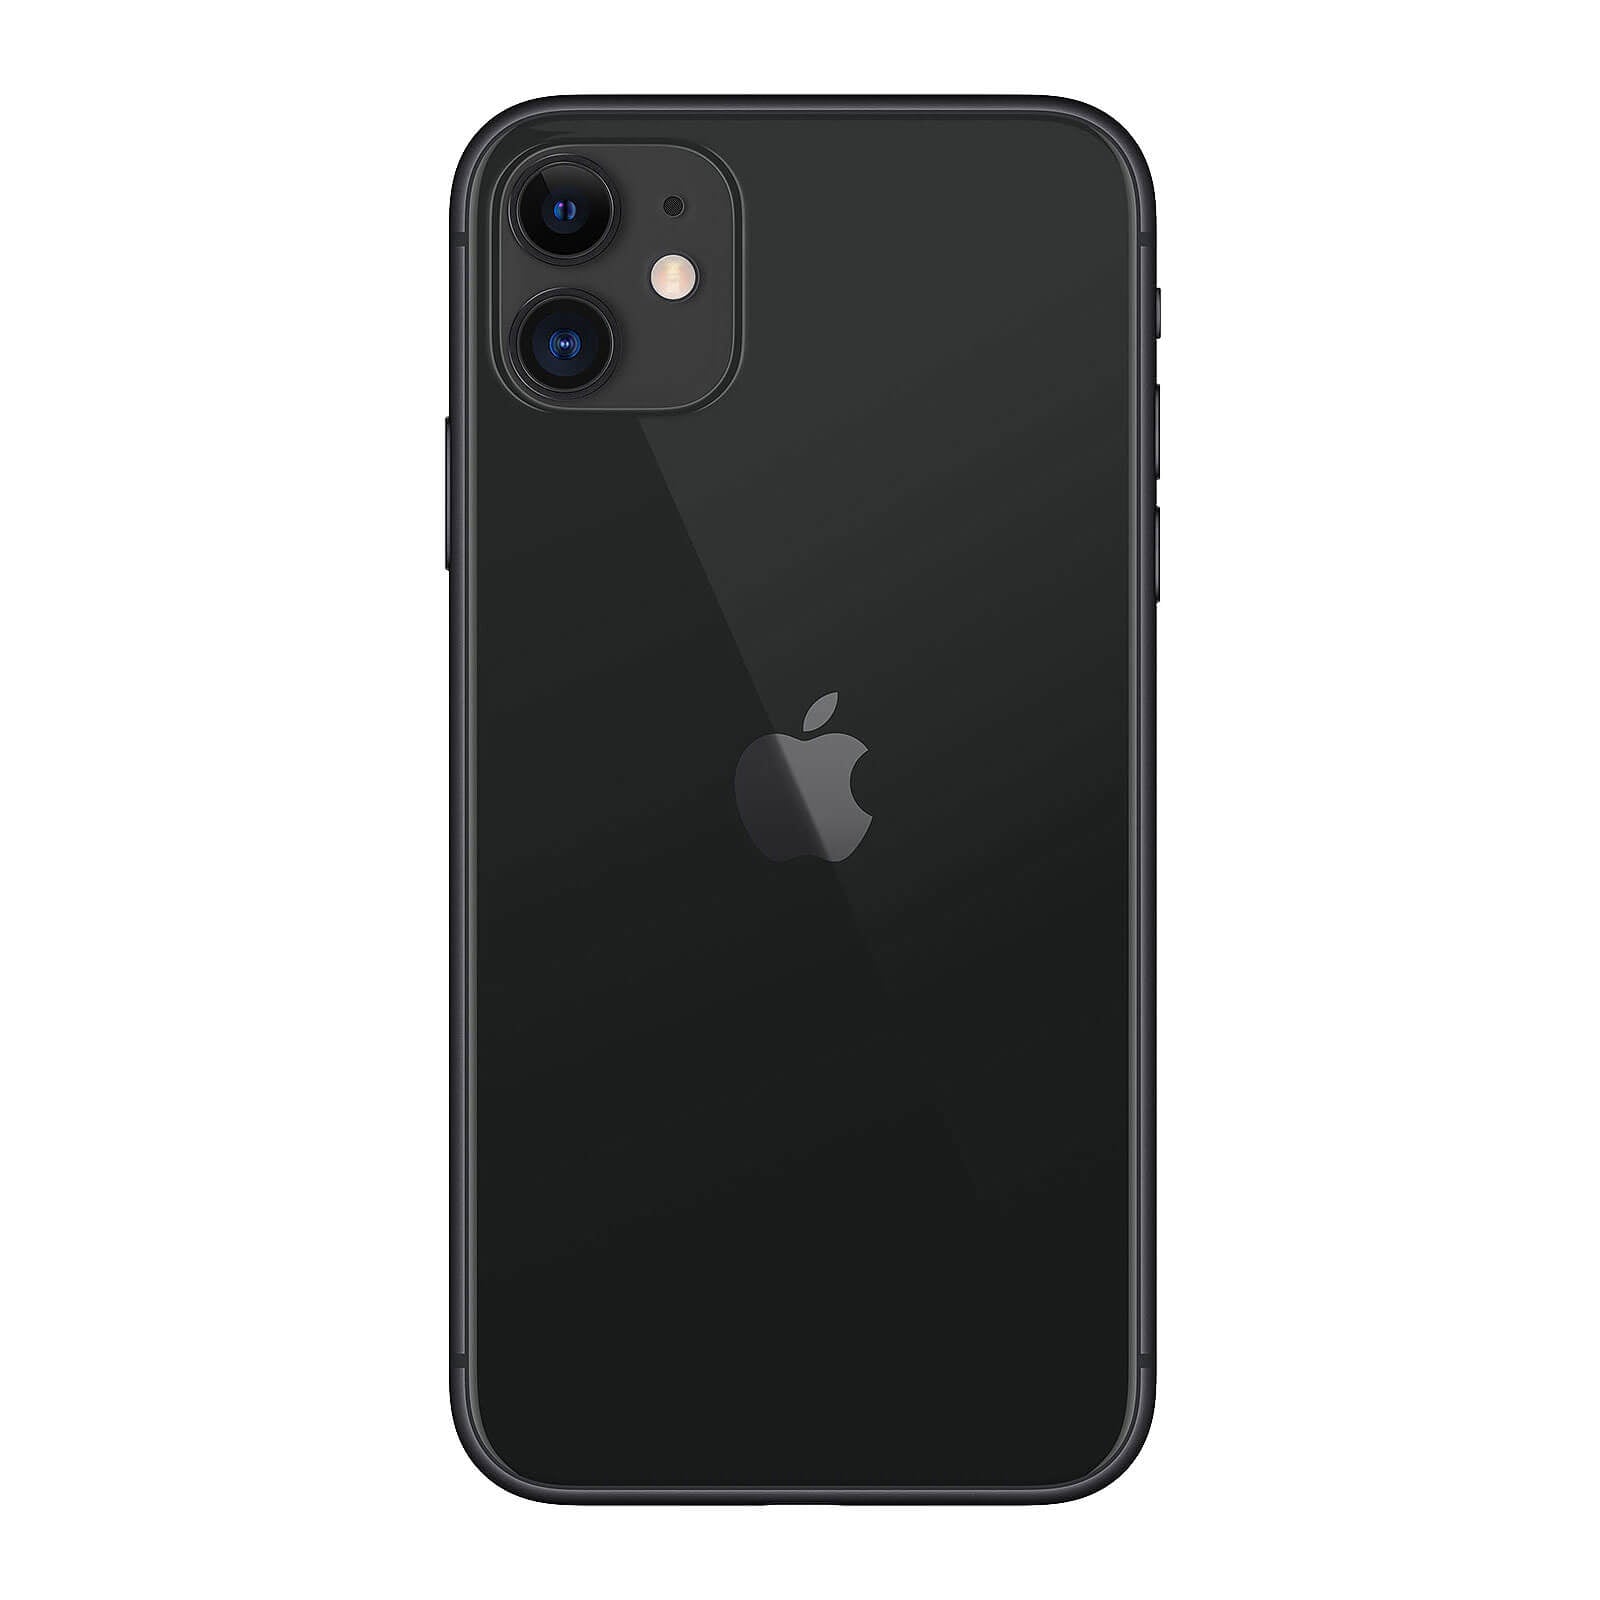 Apple iPhone 11 128GB Black Good - Unlocked